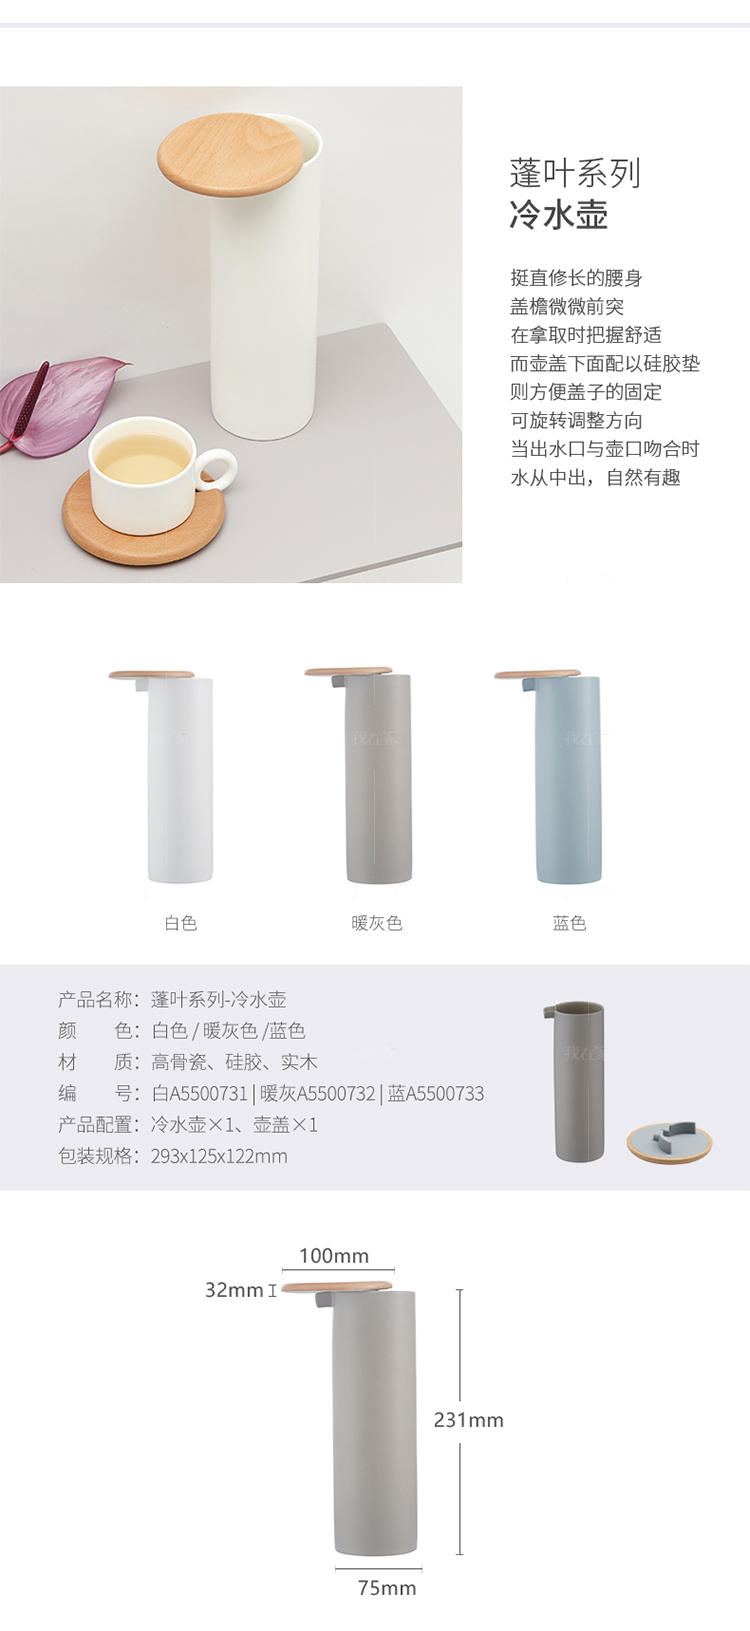 哲品系列蓬叶系列咖啡壶冷水壶的详细介绍